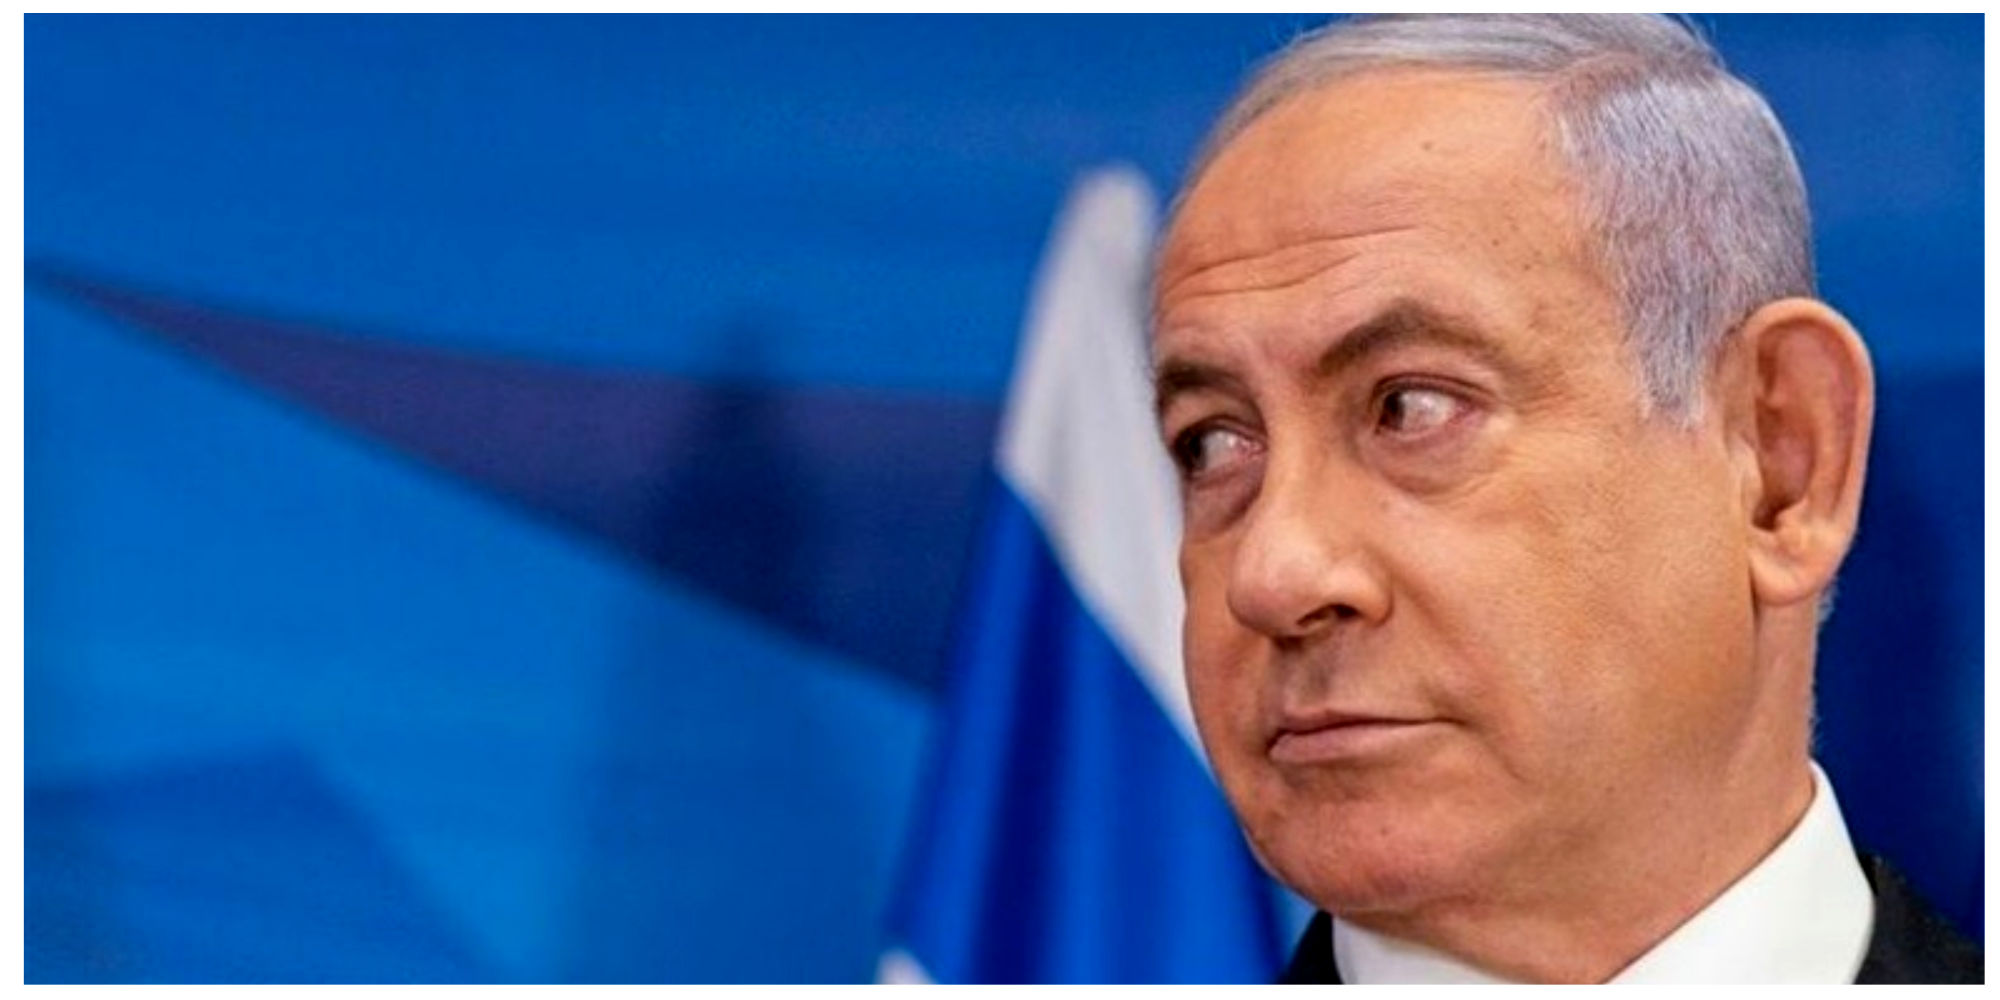 نتانیاهو حرف آخر را زد/ تکلیف جنگ روشن شد